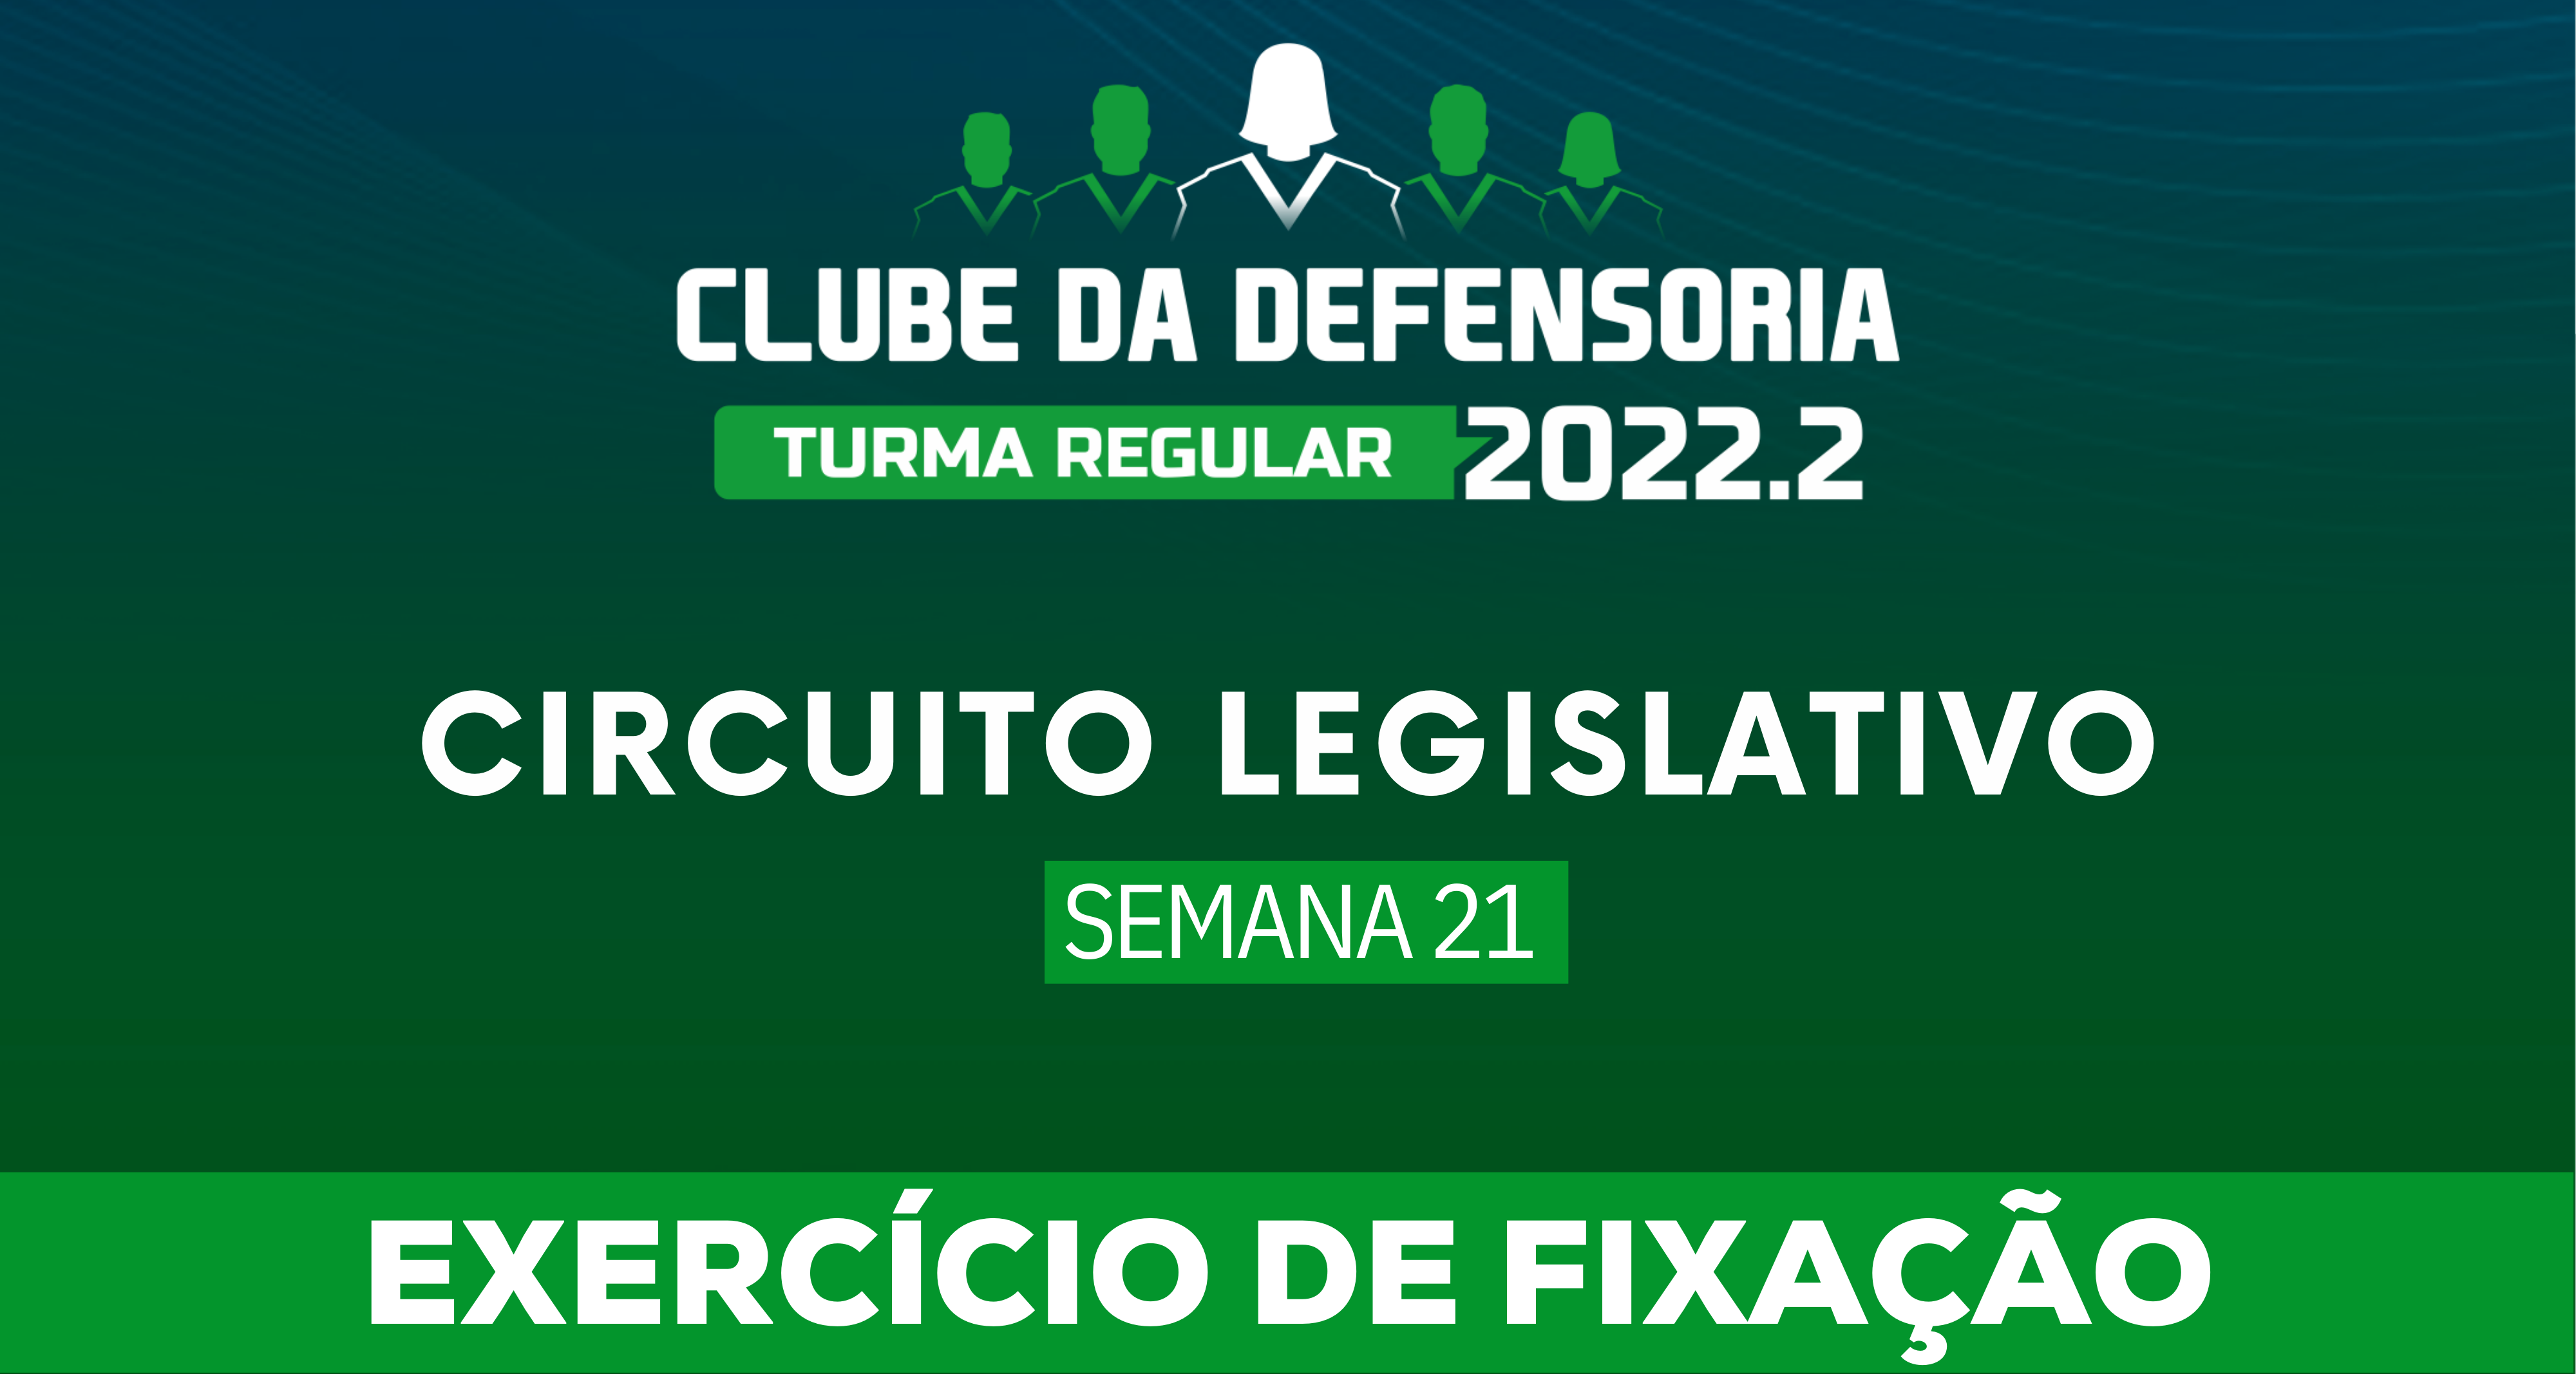 Circuito Legislativo 2022.2 (Clube da Defensoria - Semana 21)